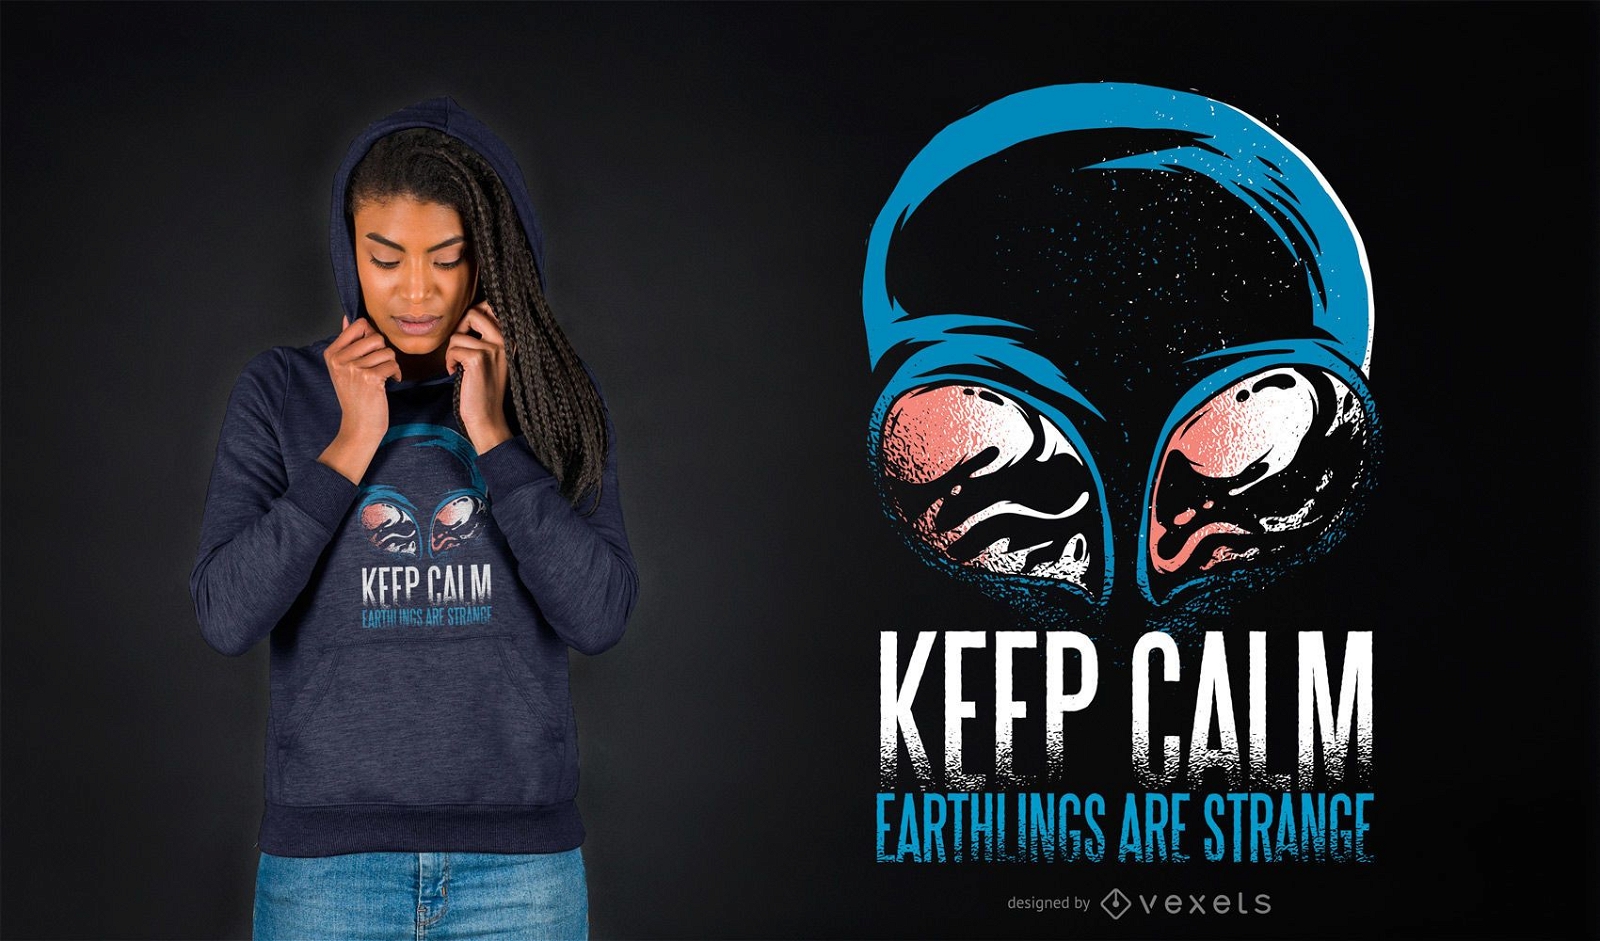 Keep calm alien t-shirt design